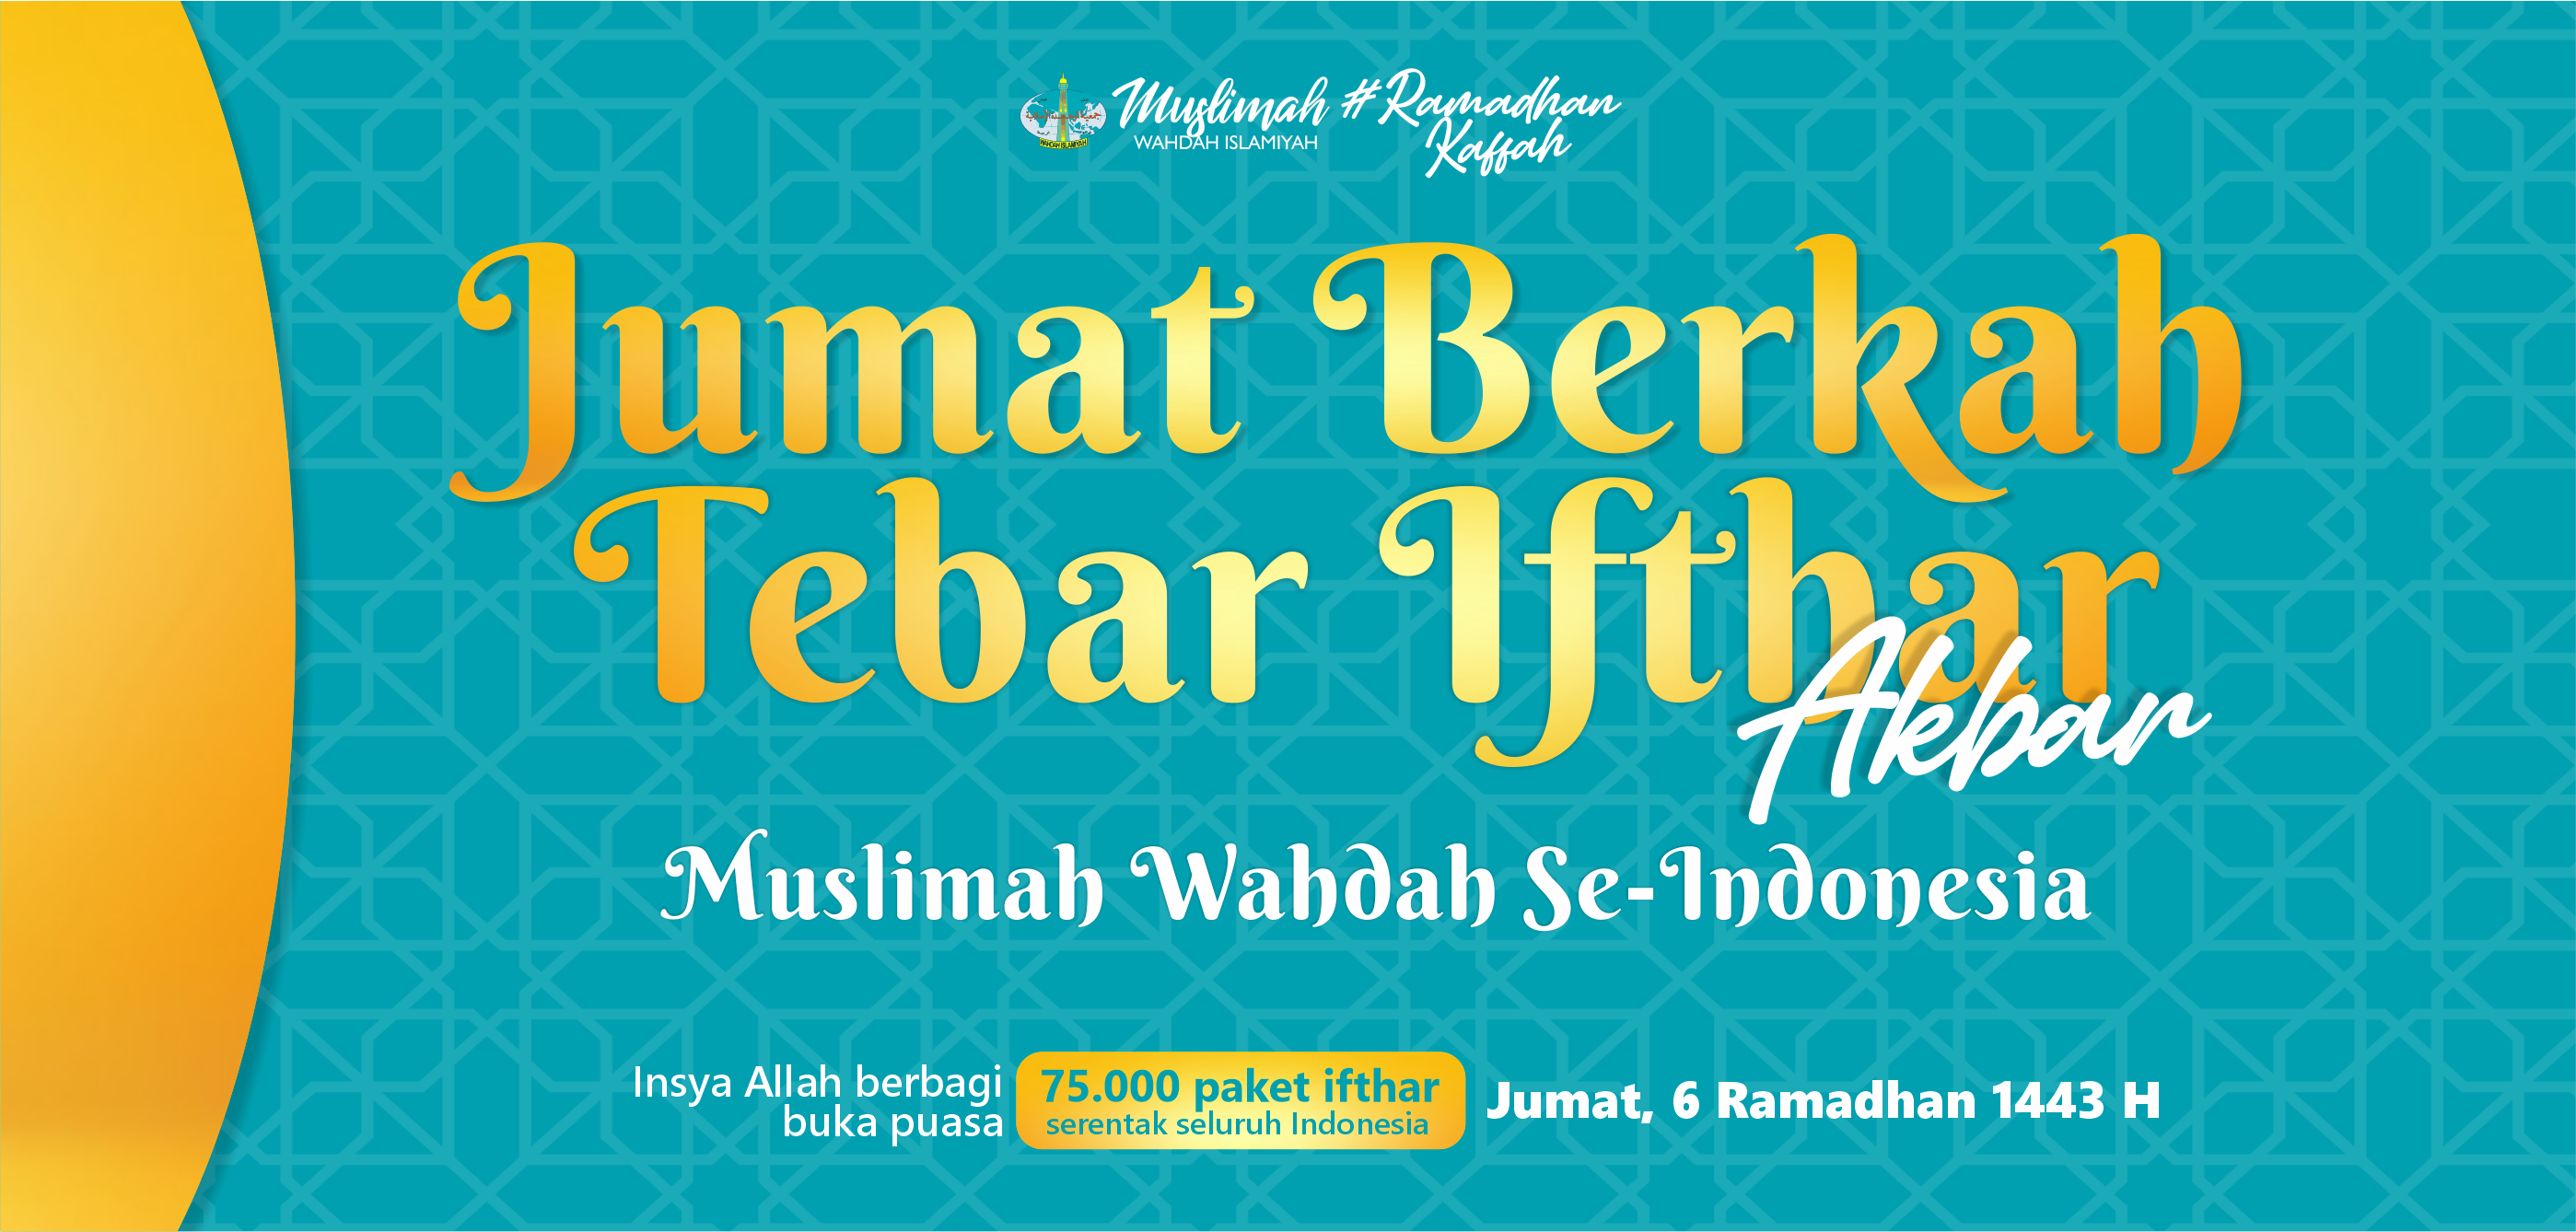 Besok! Jumat Berkah, Muslimah Wahdah Islamiyah Siap Tebar 75.000 Paket Ifthar Seluruh Indonesia